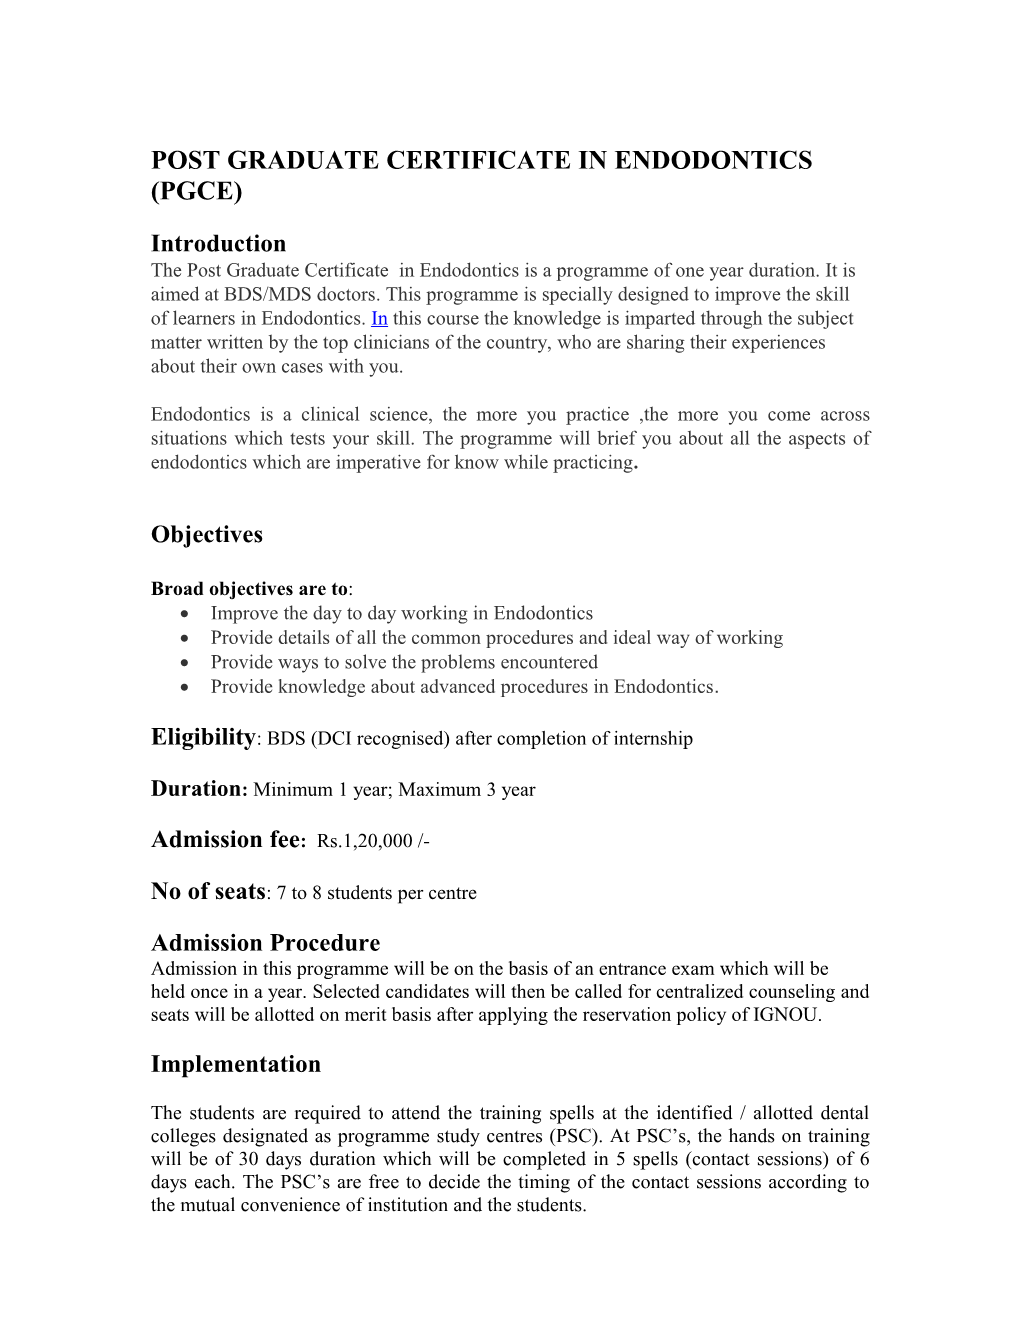 Post Graduate Certificate in Endodontics (Pgce)